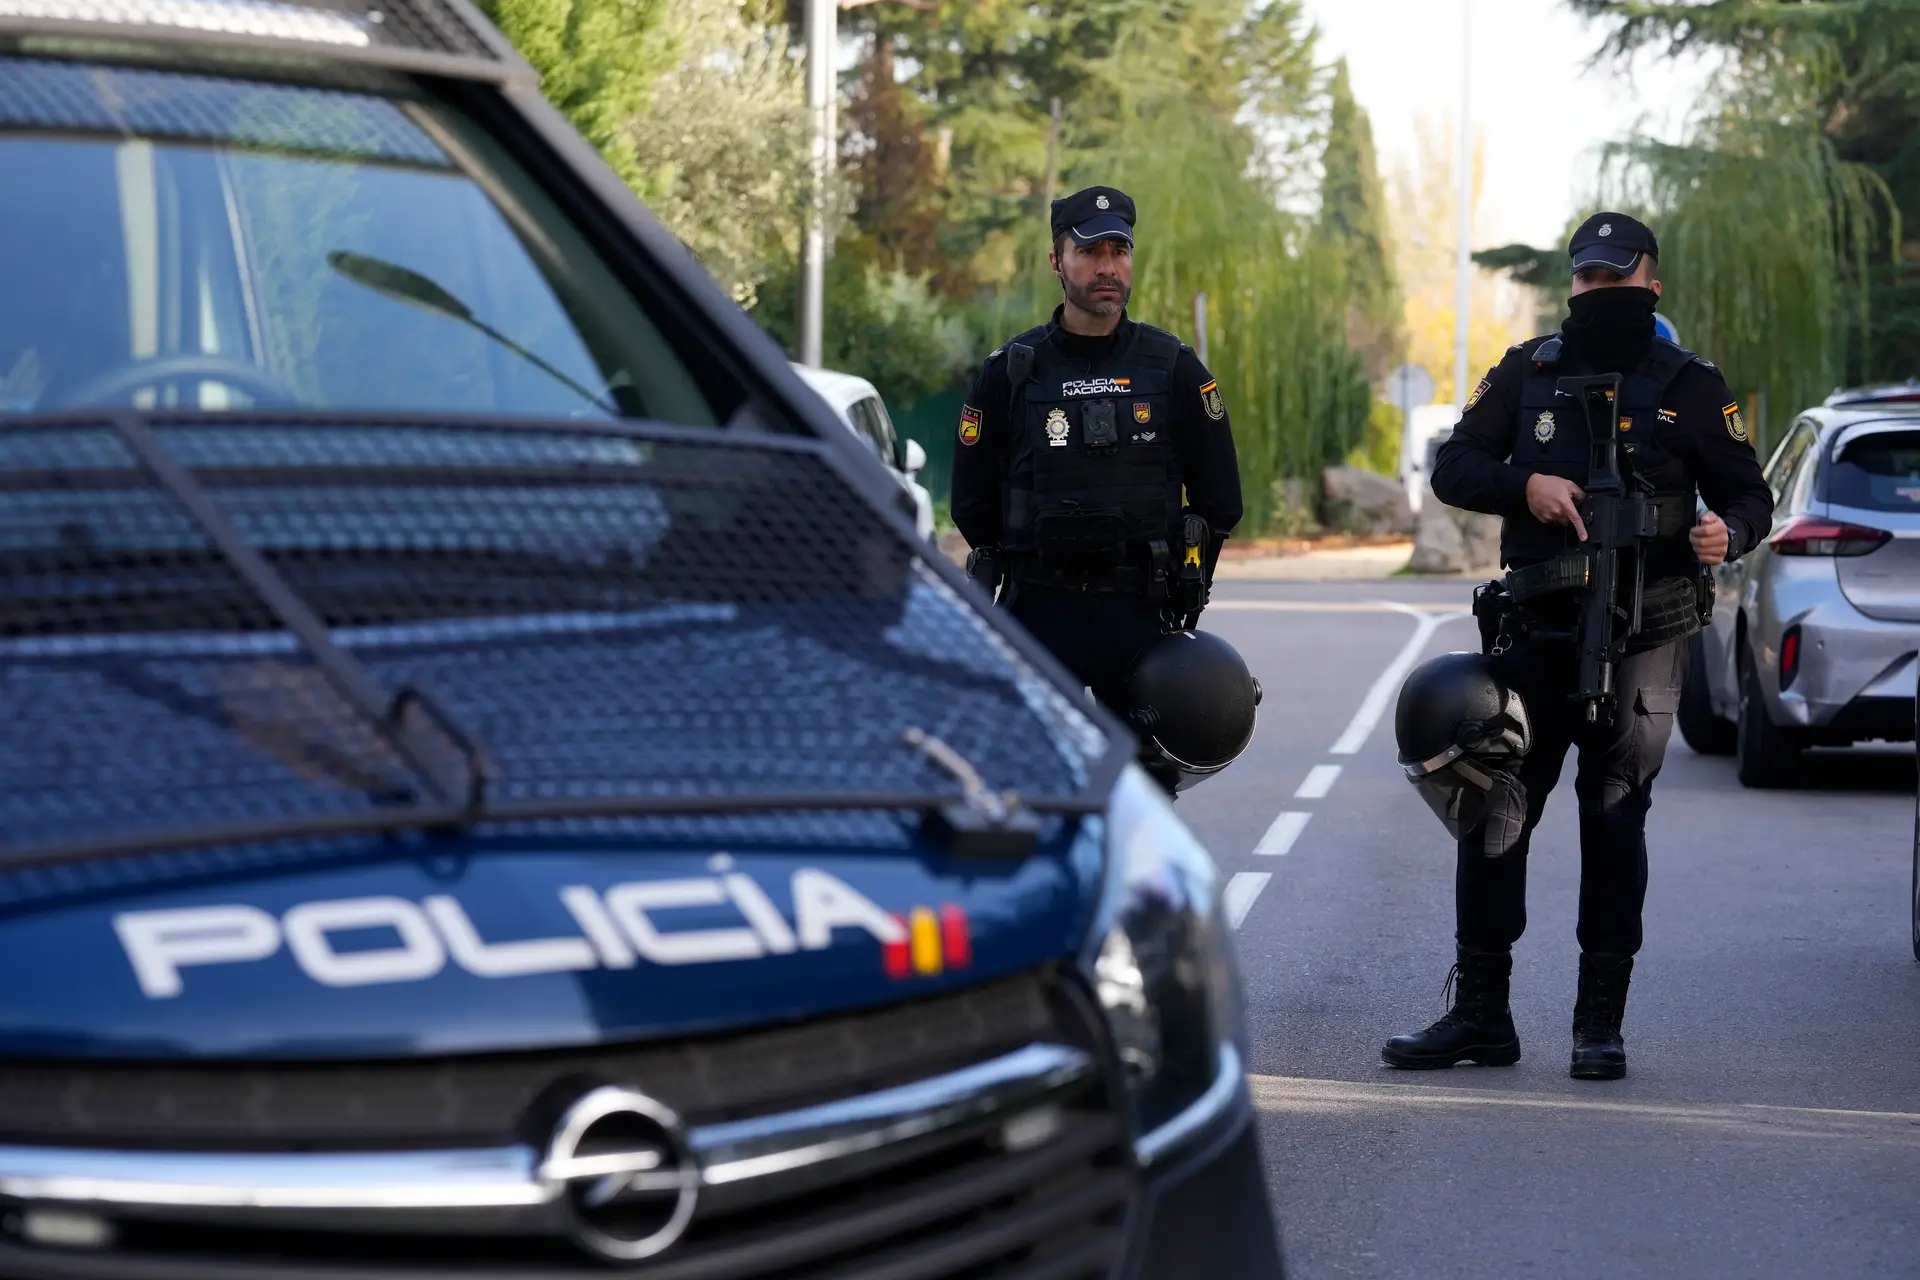 Menor esfaqueia professores e alunos em Espanha